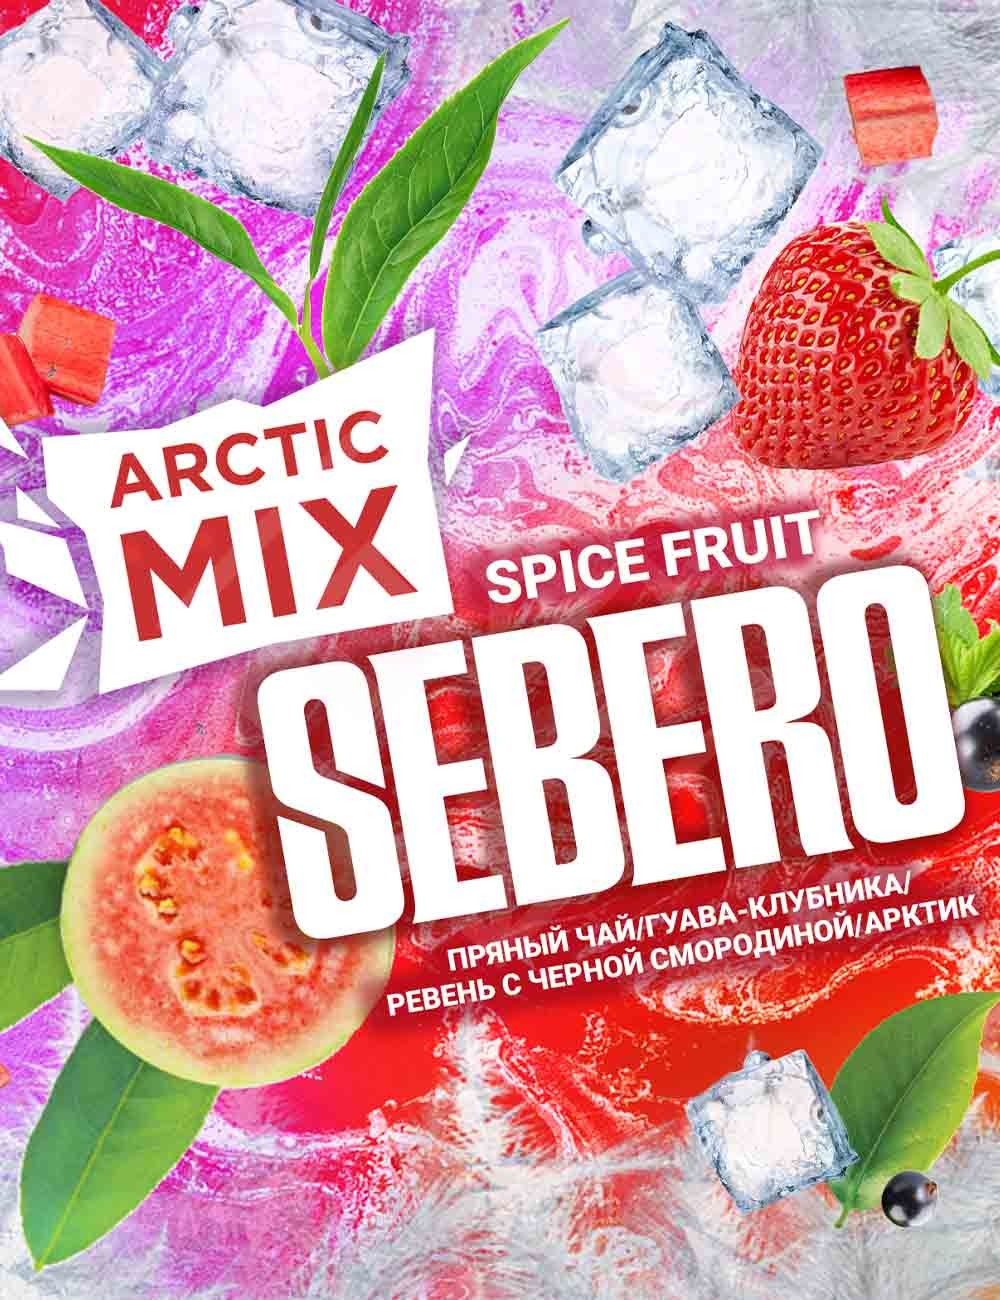 "Arctic Mix" Spice Fruit (Spise Frt)